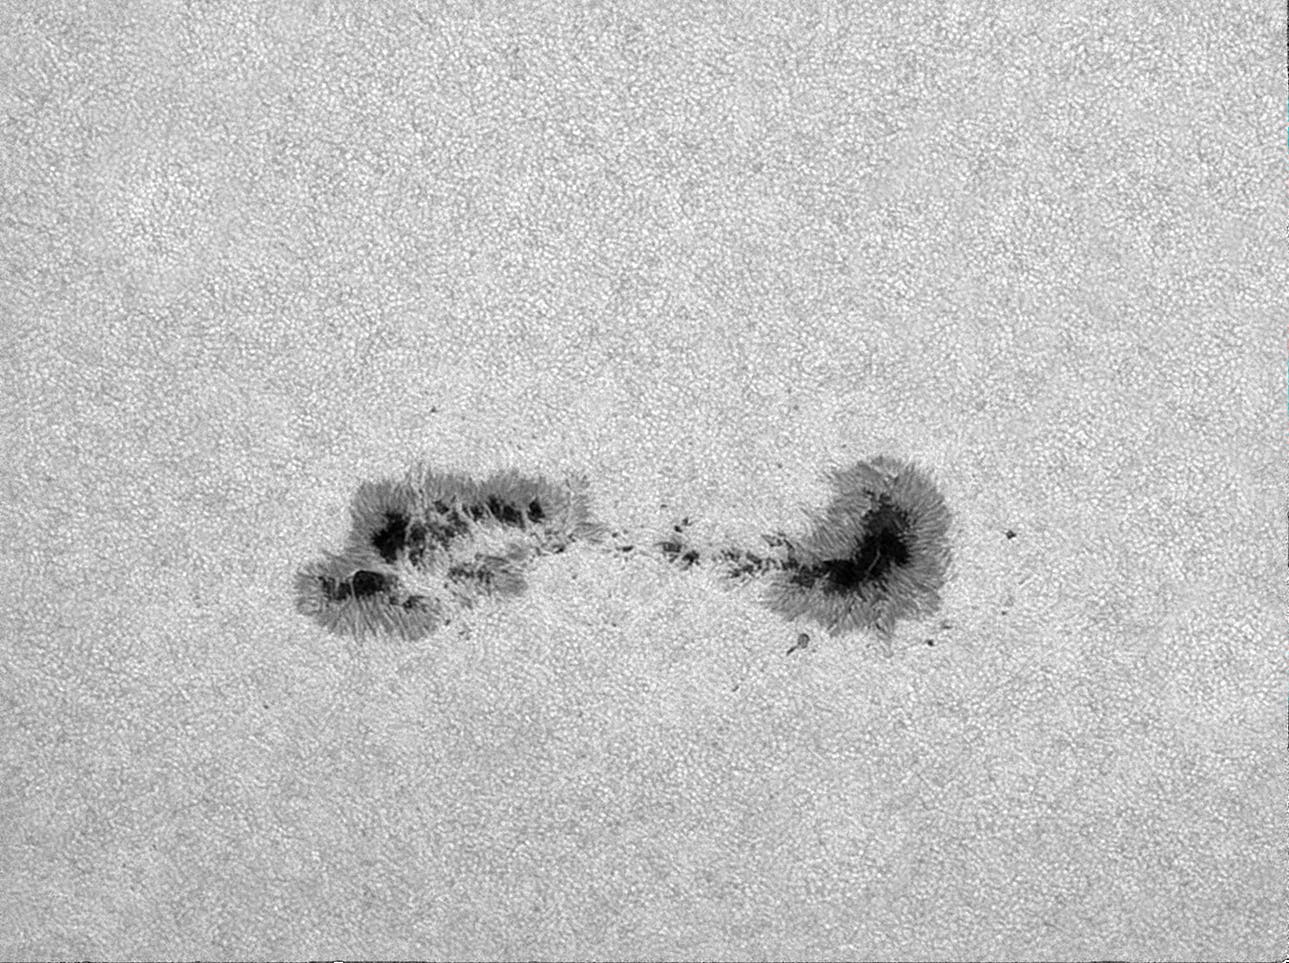 Sonnenflecken AR3055 am 12. Juli 2022